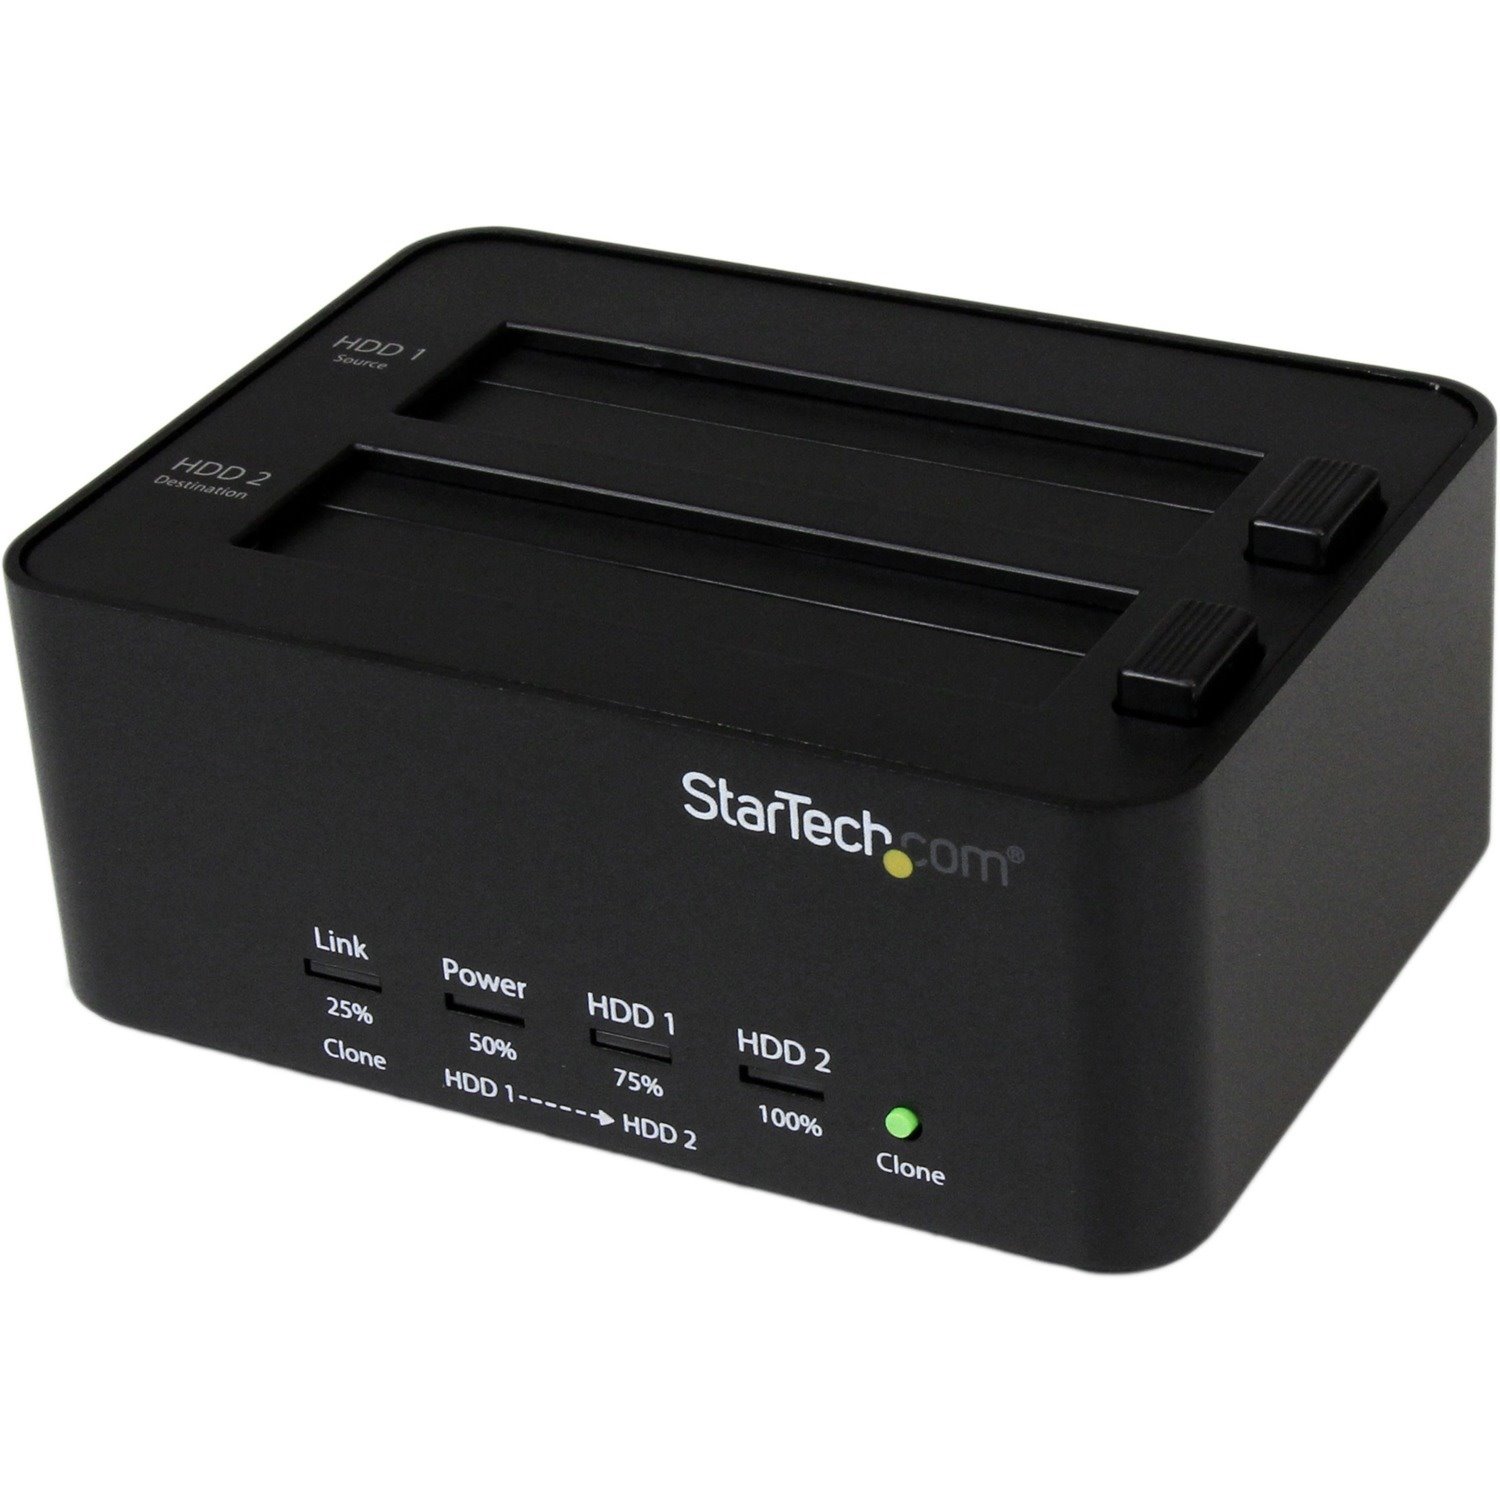 StarTech.com Drive Dock SATA/600 - USB 3.0 Type B Host Interface External - Black